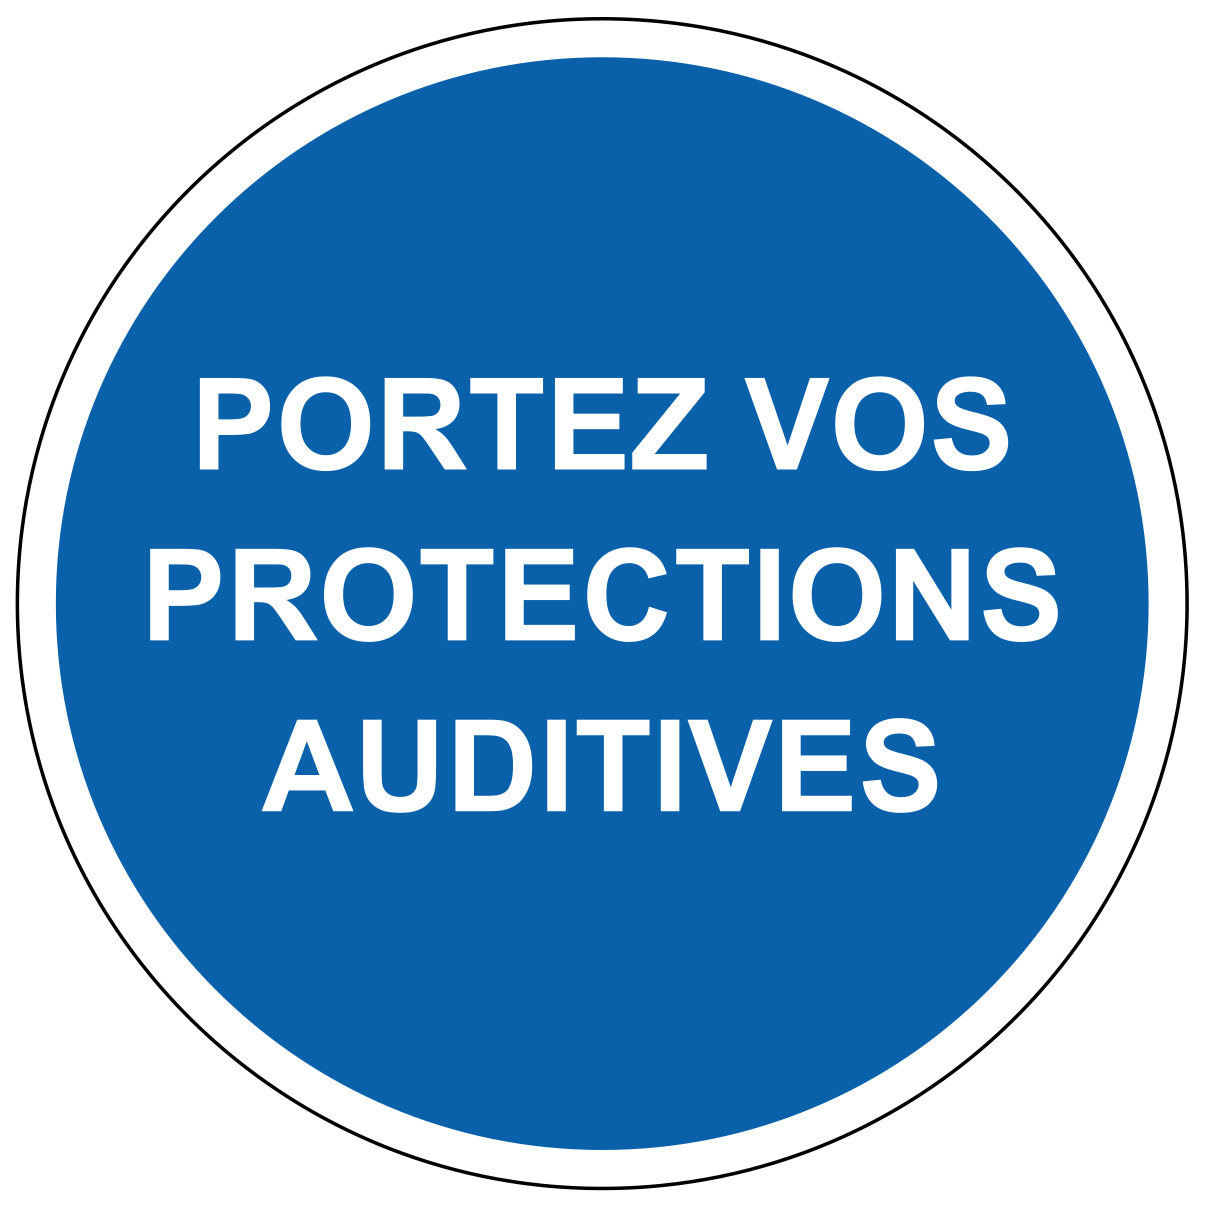 Portez vos protections auditives - M311 - étiquettes et panneaux d'obligation et de consigne